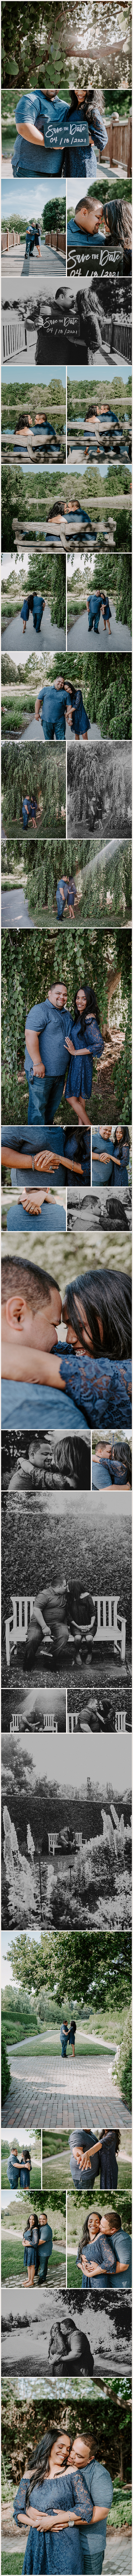 Melisa + Kidany | Couples Engagement Session | Toledo Botanical Gardens